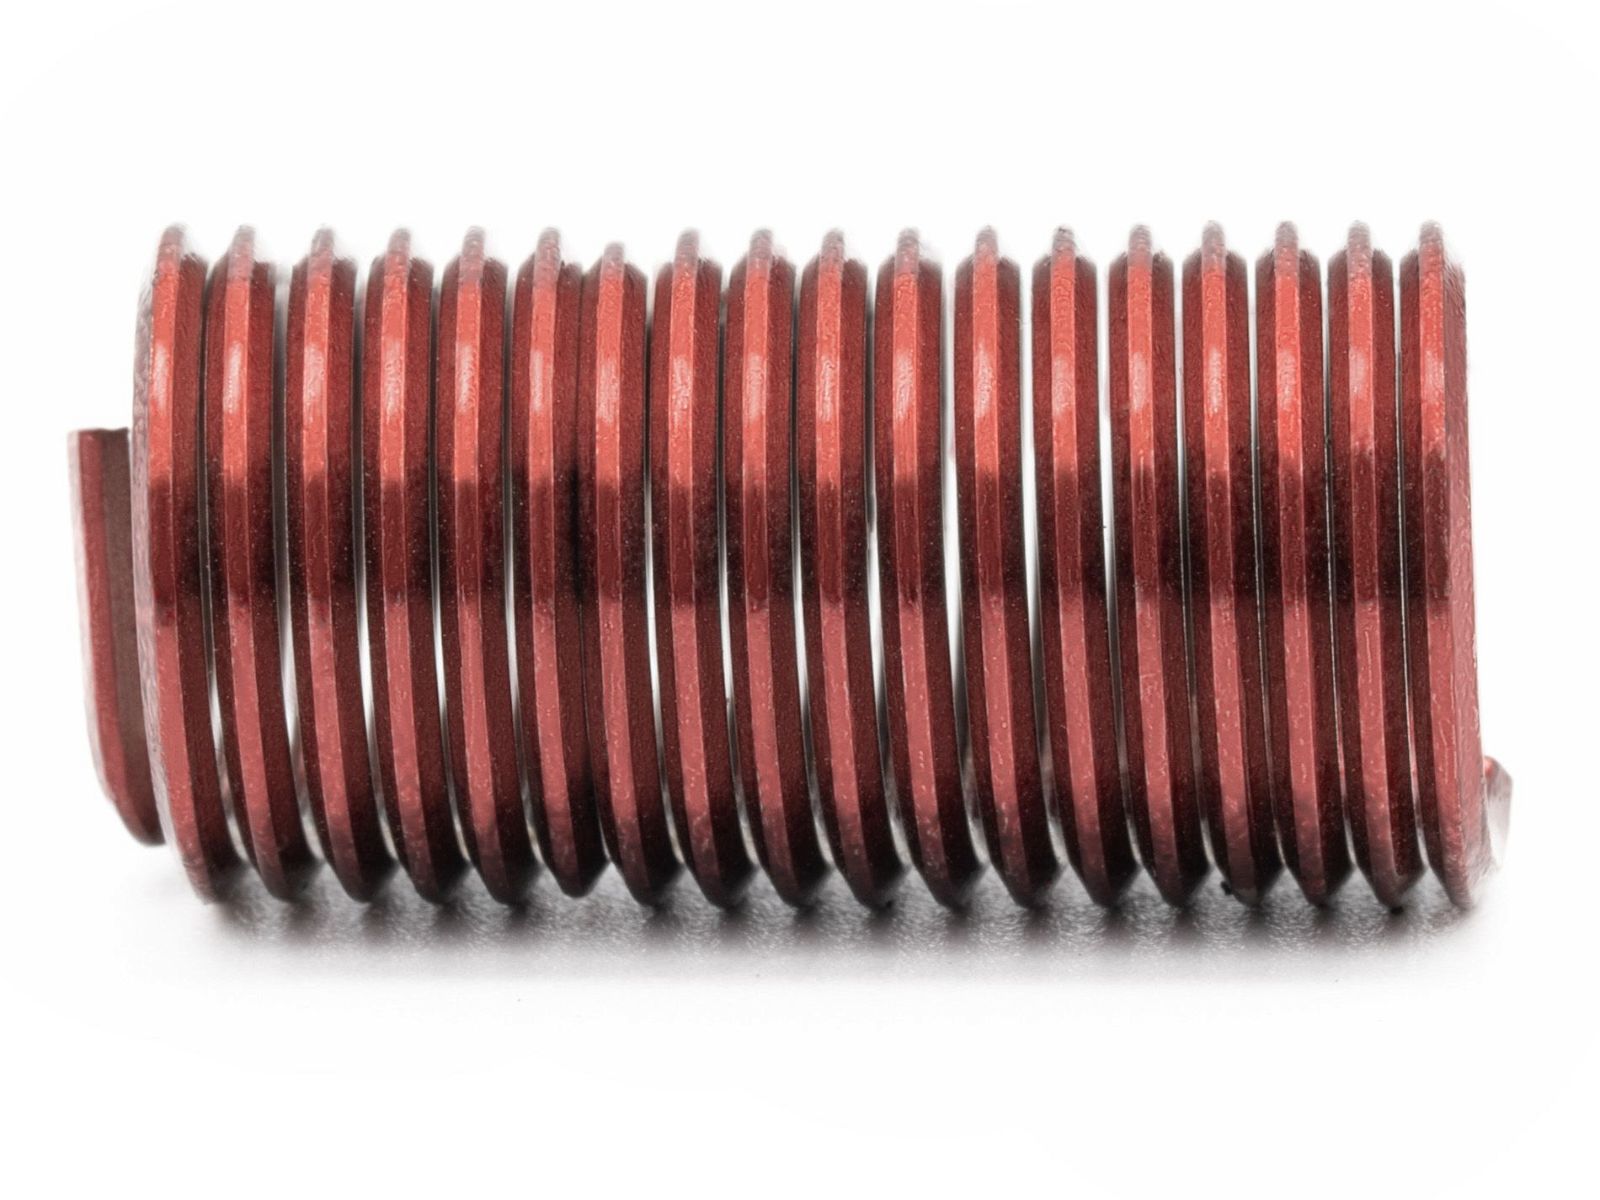 BaerCoil Wire Thread Inserts M 8 x 1.0 - 3.0 D (24 mm) - screw grip (screw locking) - 100 pcs.